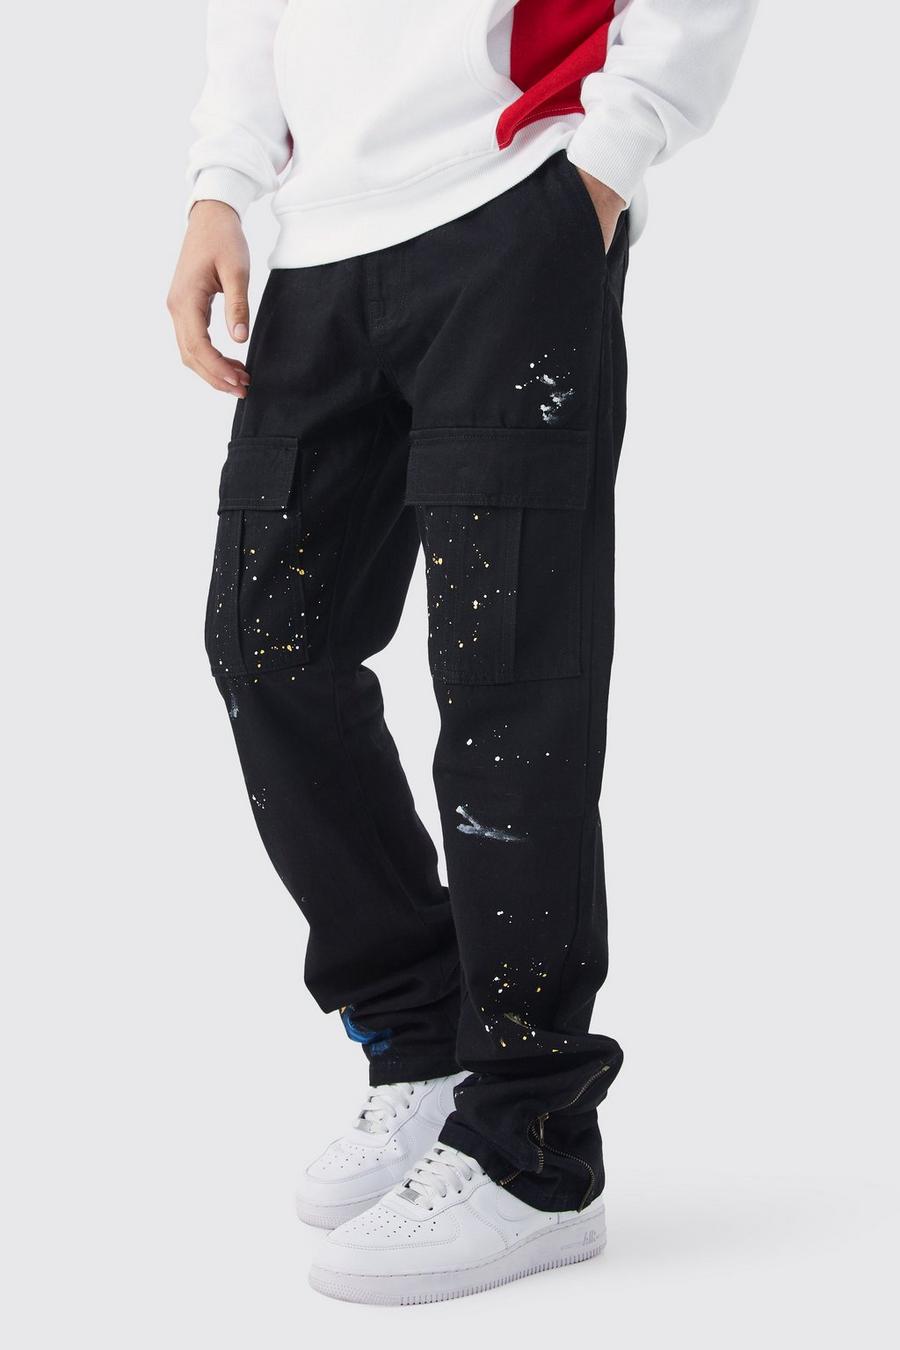 Pantaloni Cargo Slim Fit con zip, pieghe sul fondo e schizzi di colore, Black